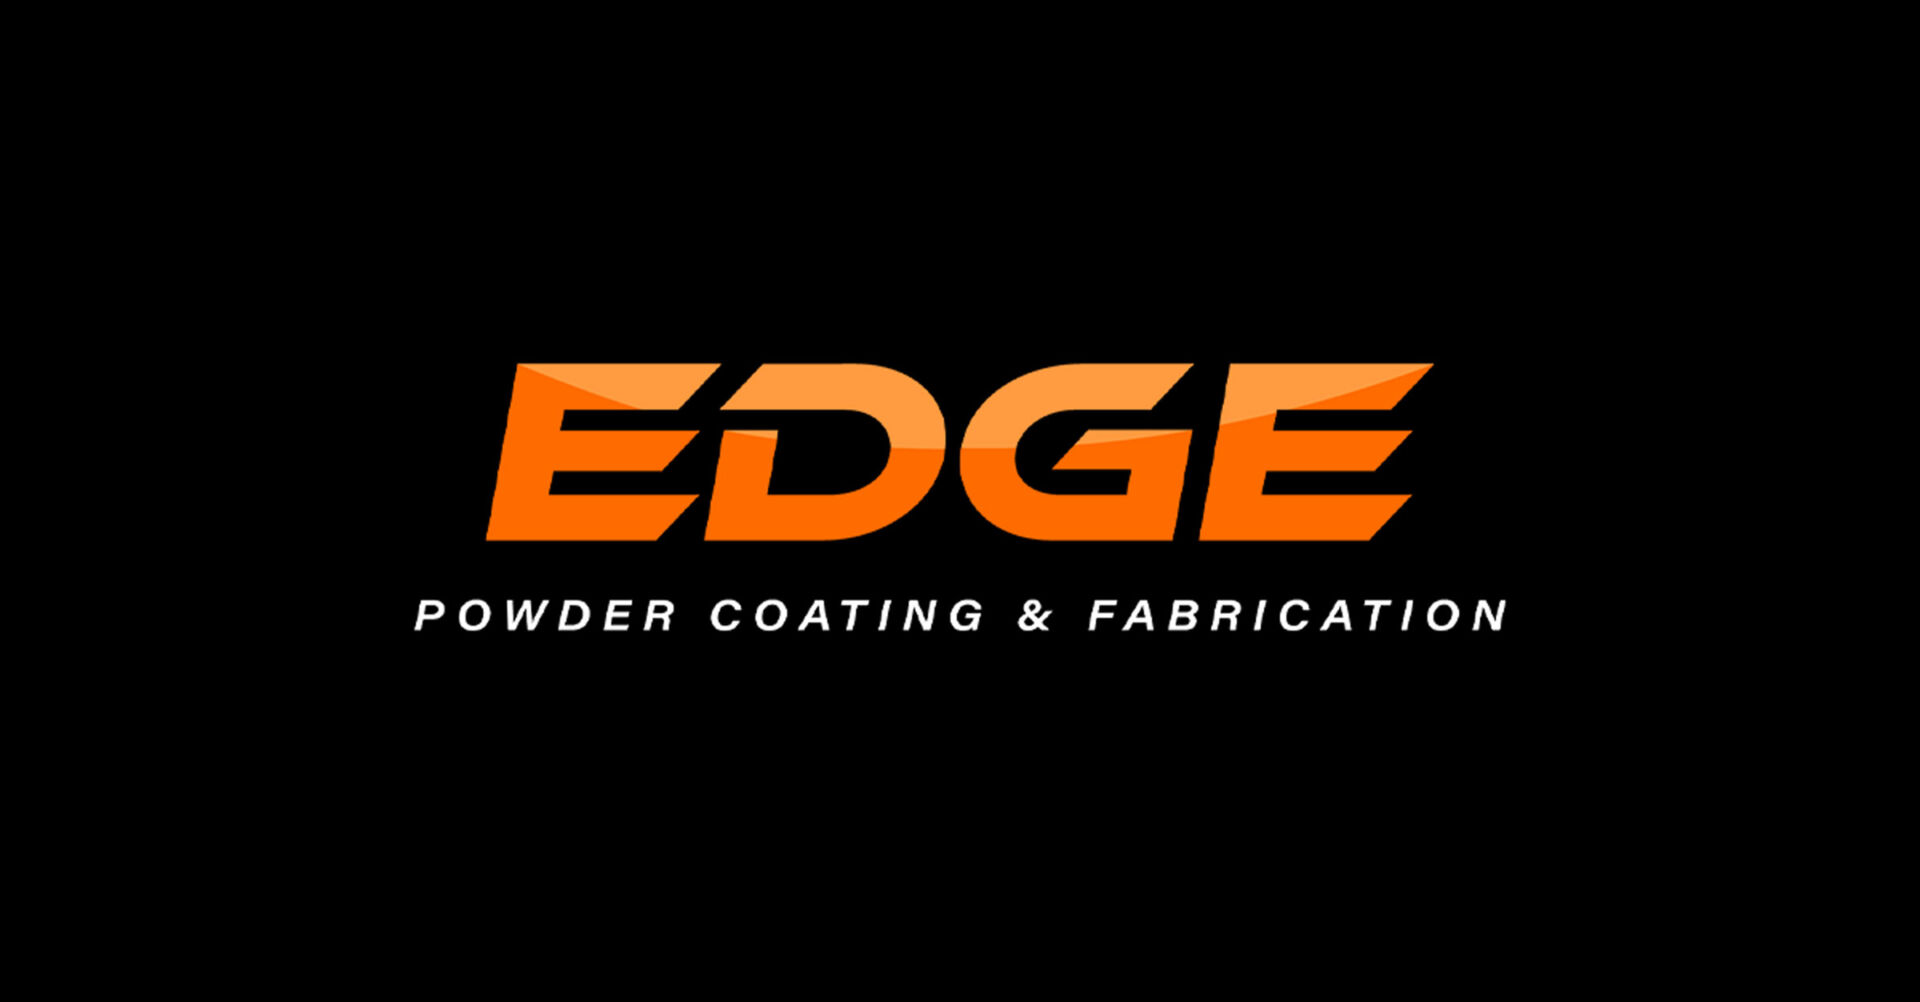 EDGE Powder Coating & Fabrication - Brand Identity